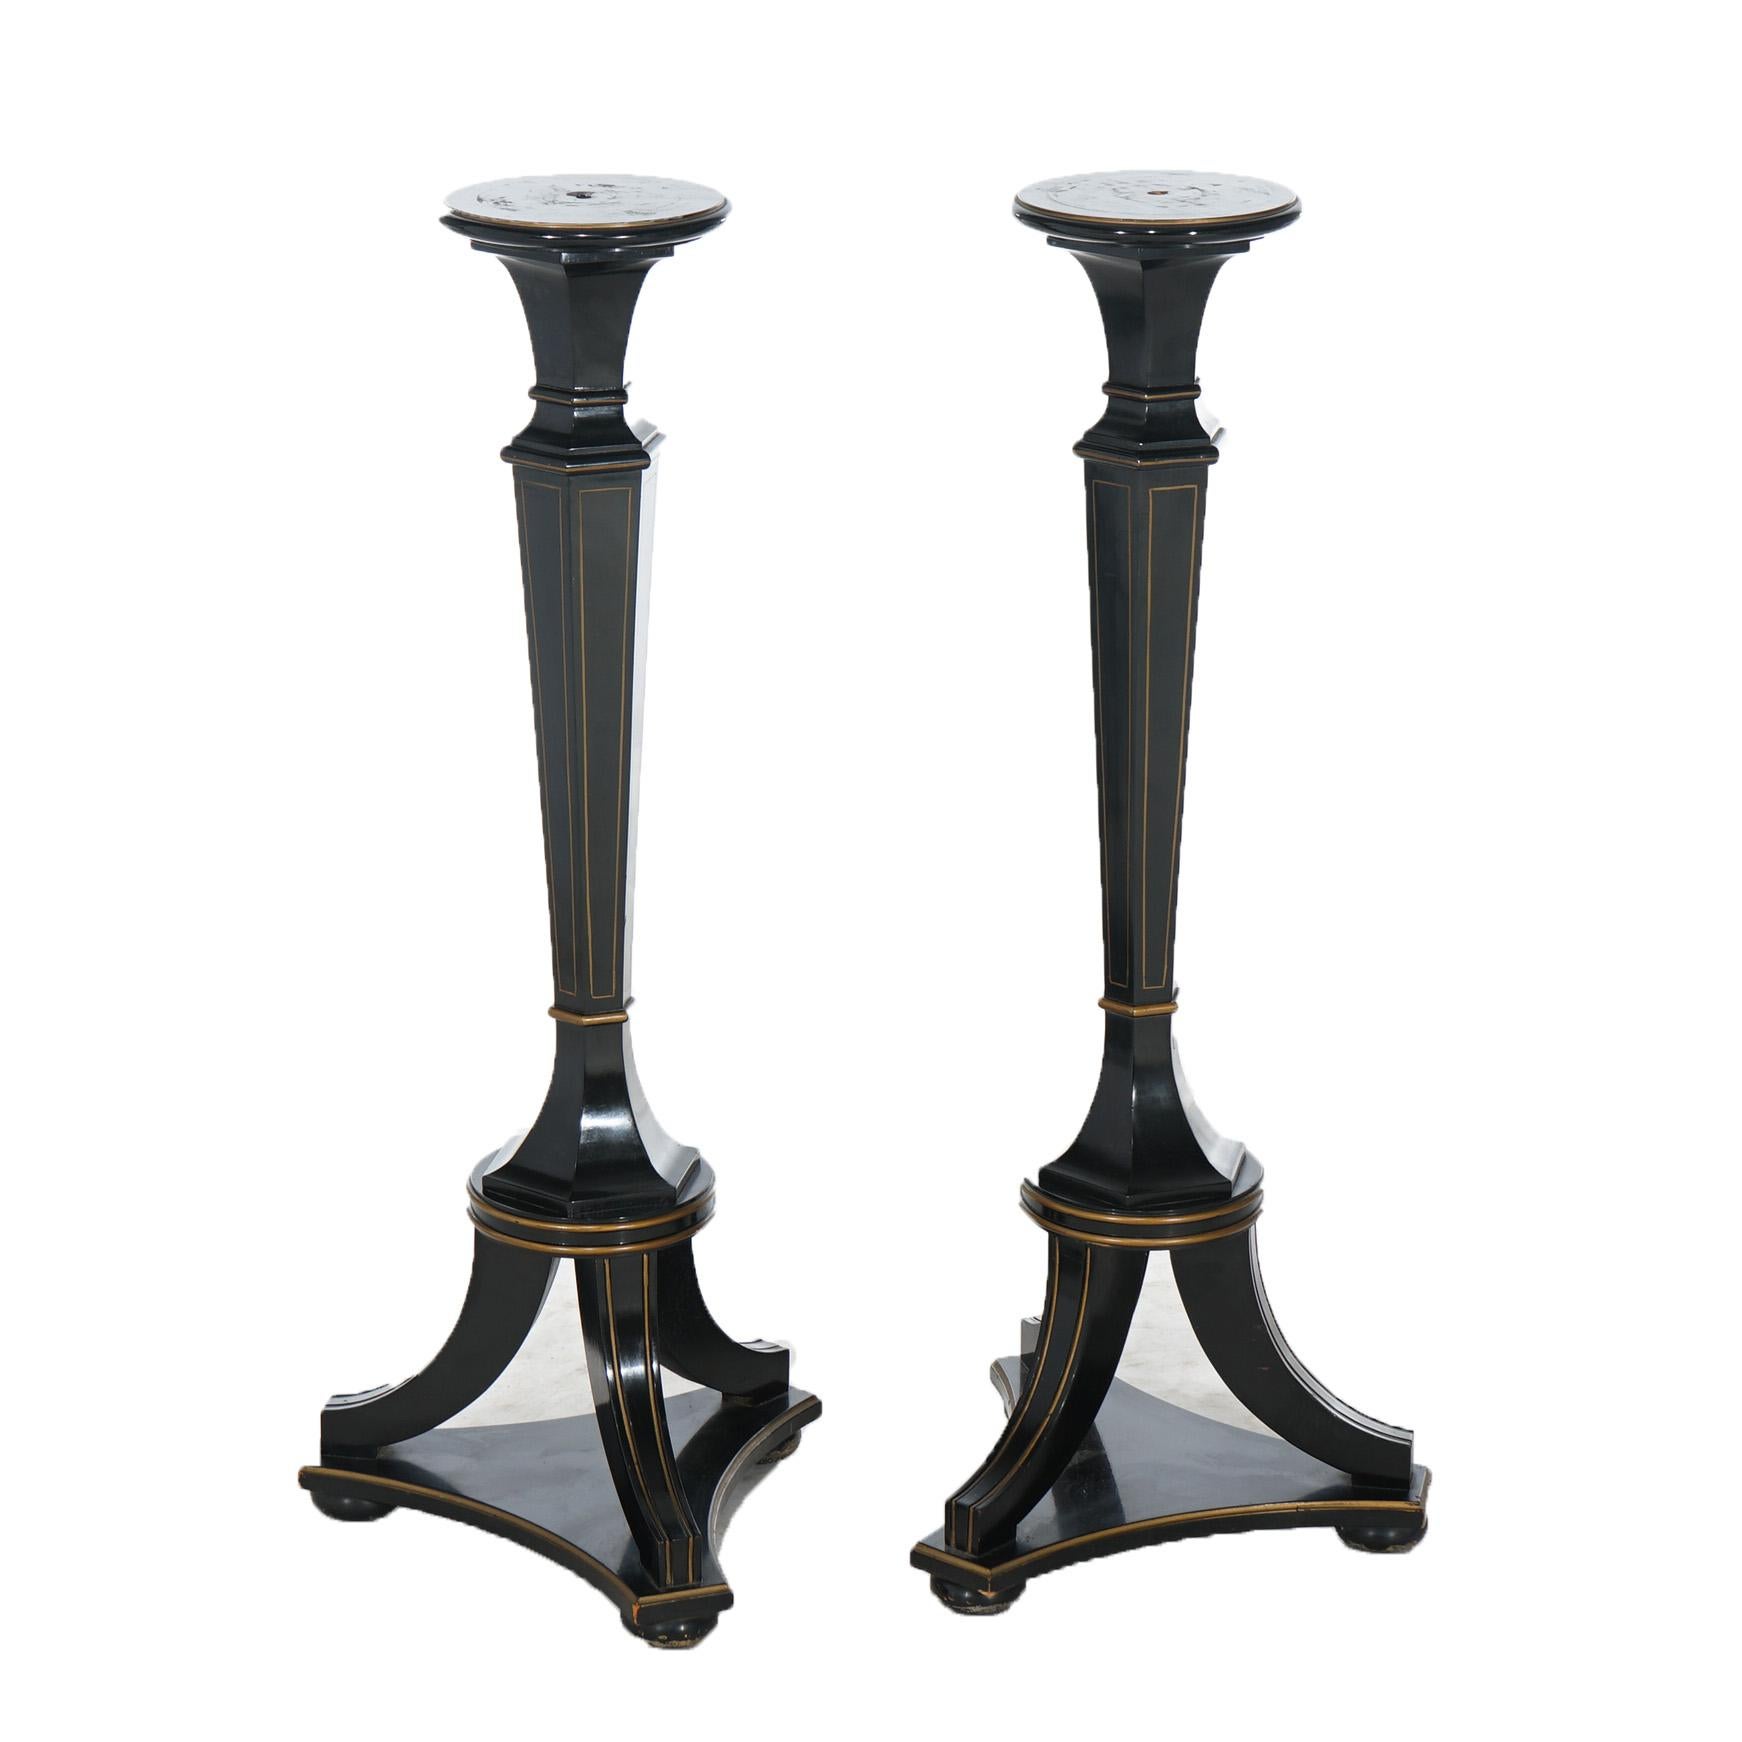 Paar antike neoklassische ebonisierte Holzständer mit konischen Säulen und Fuß, um 1900

Maße - 40,5 